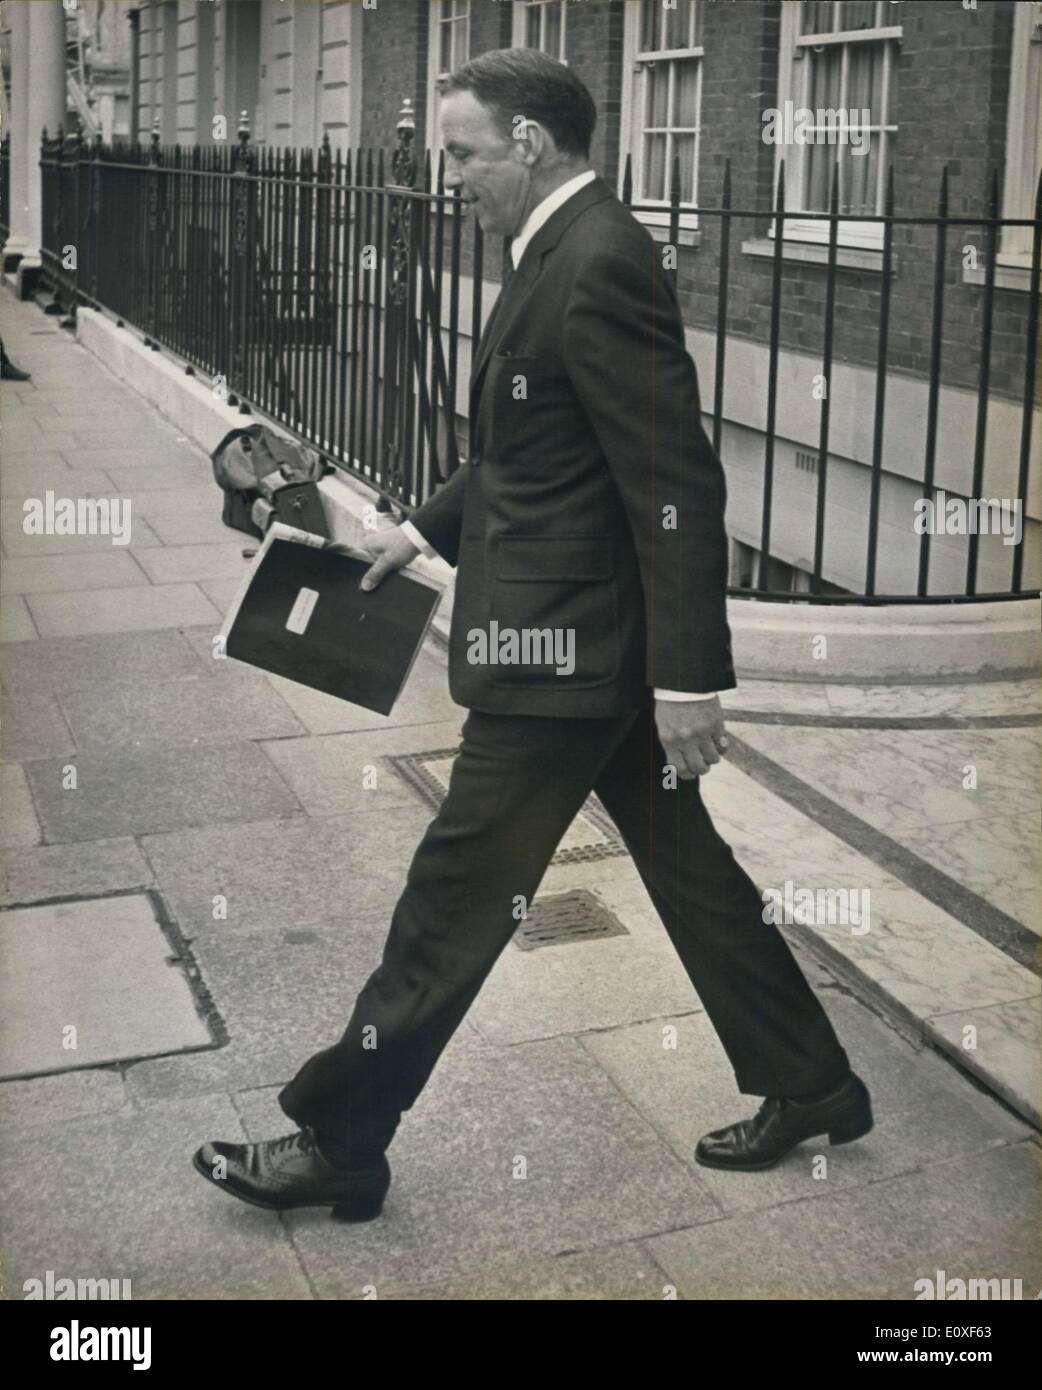 Agosto 02, 1966 - Frank Sinatra zancada. La foto muestra Frank Sinatra foto perseguía como salió de su casa en Grosvenor Square hoy. Foto de stock